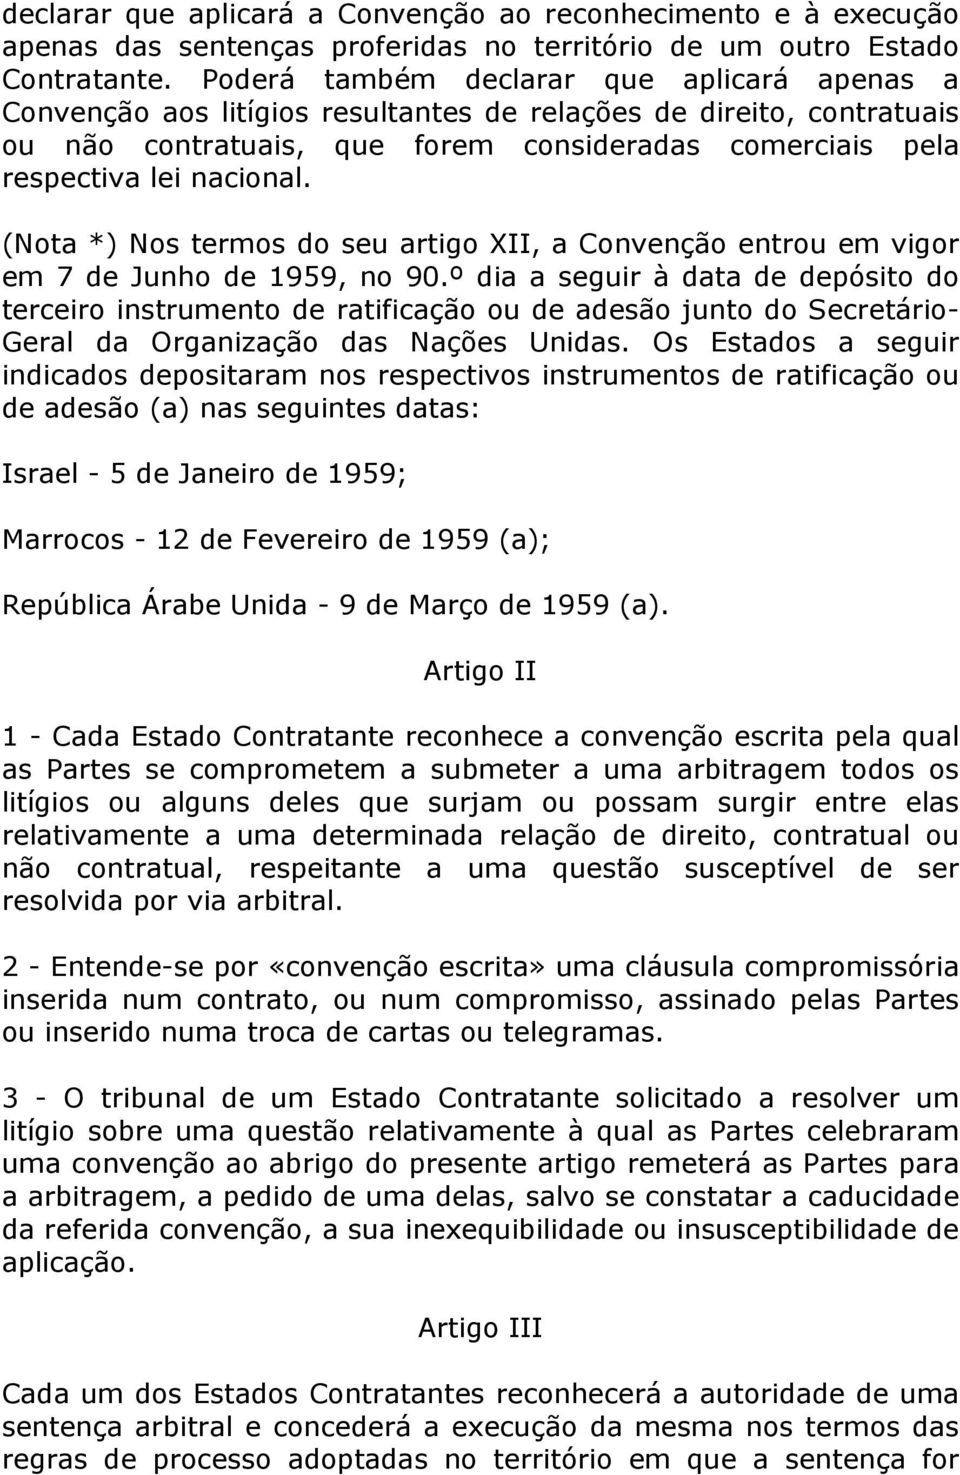 (Nota *) Nos termos do seu artigo XII, a Convenção entrou em vigor em 7 de Junho de 1959, no 90.